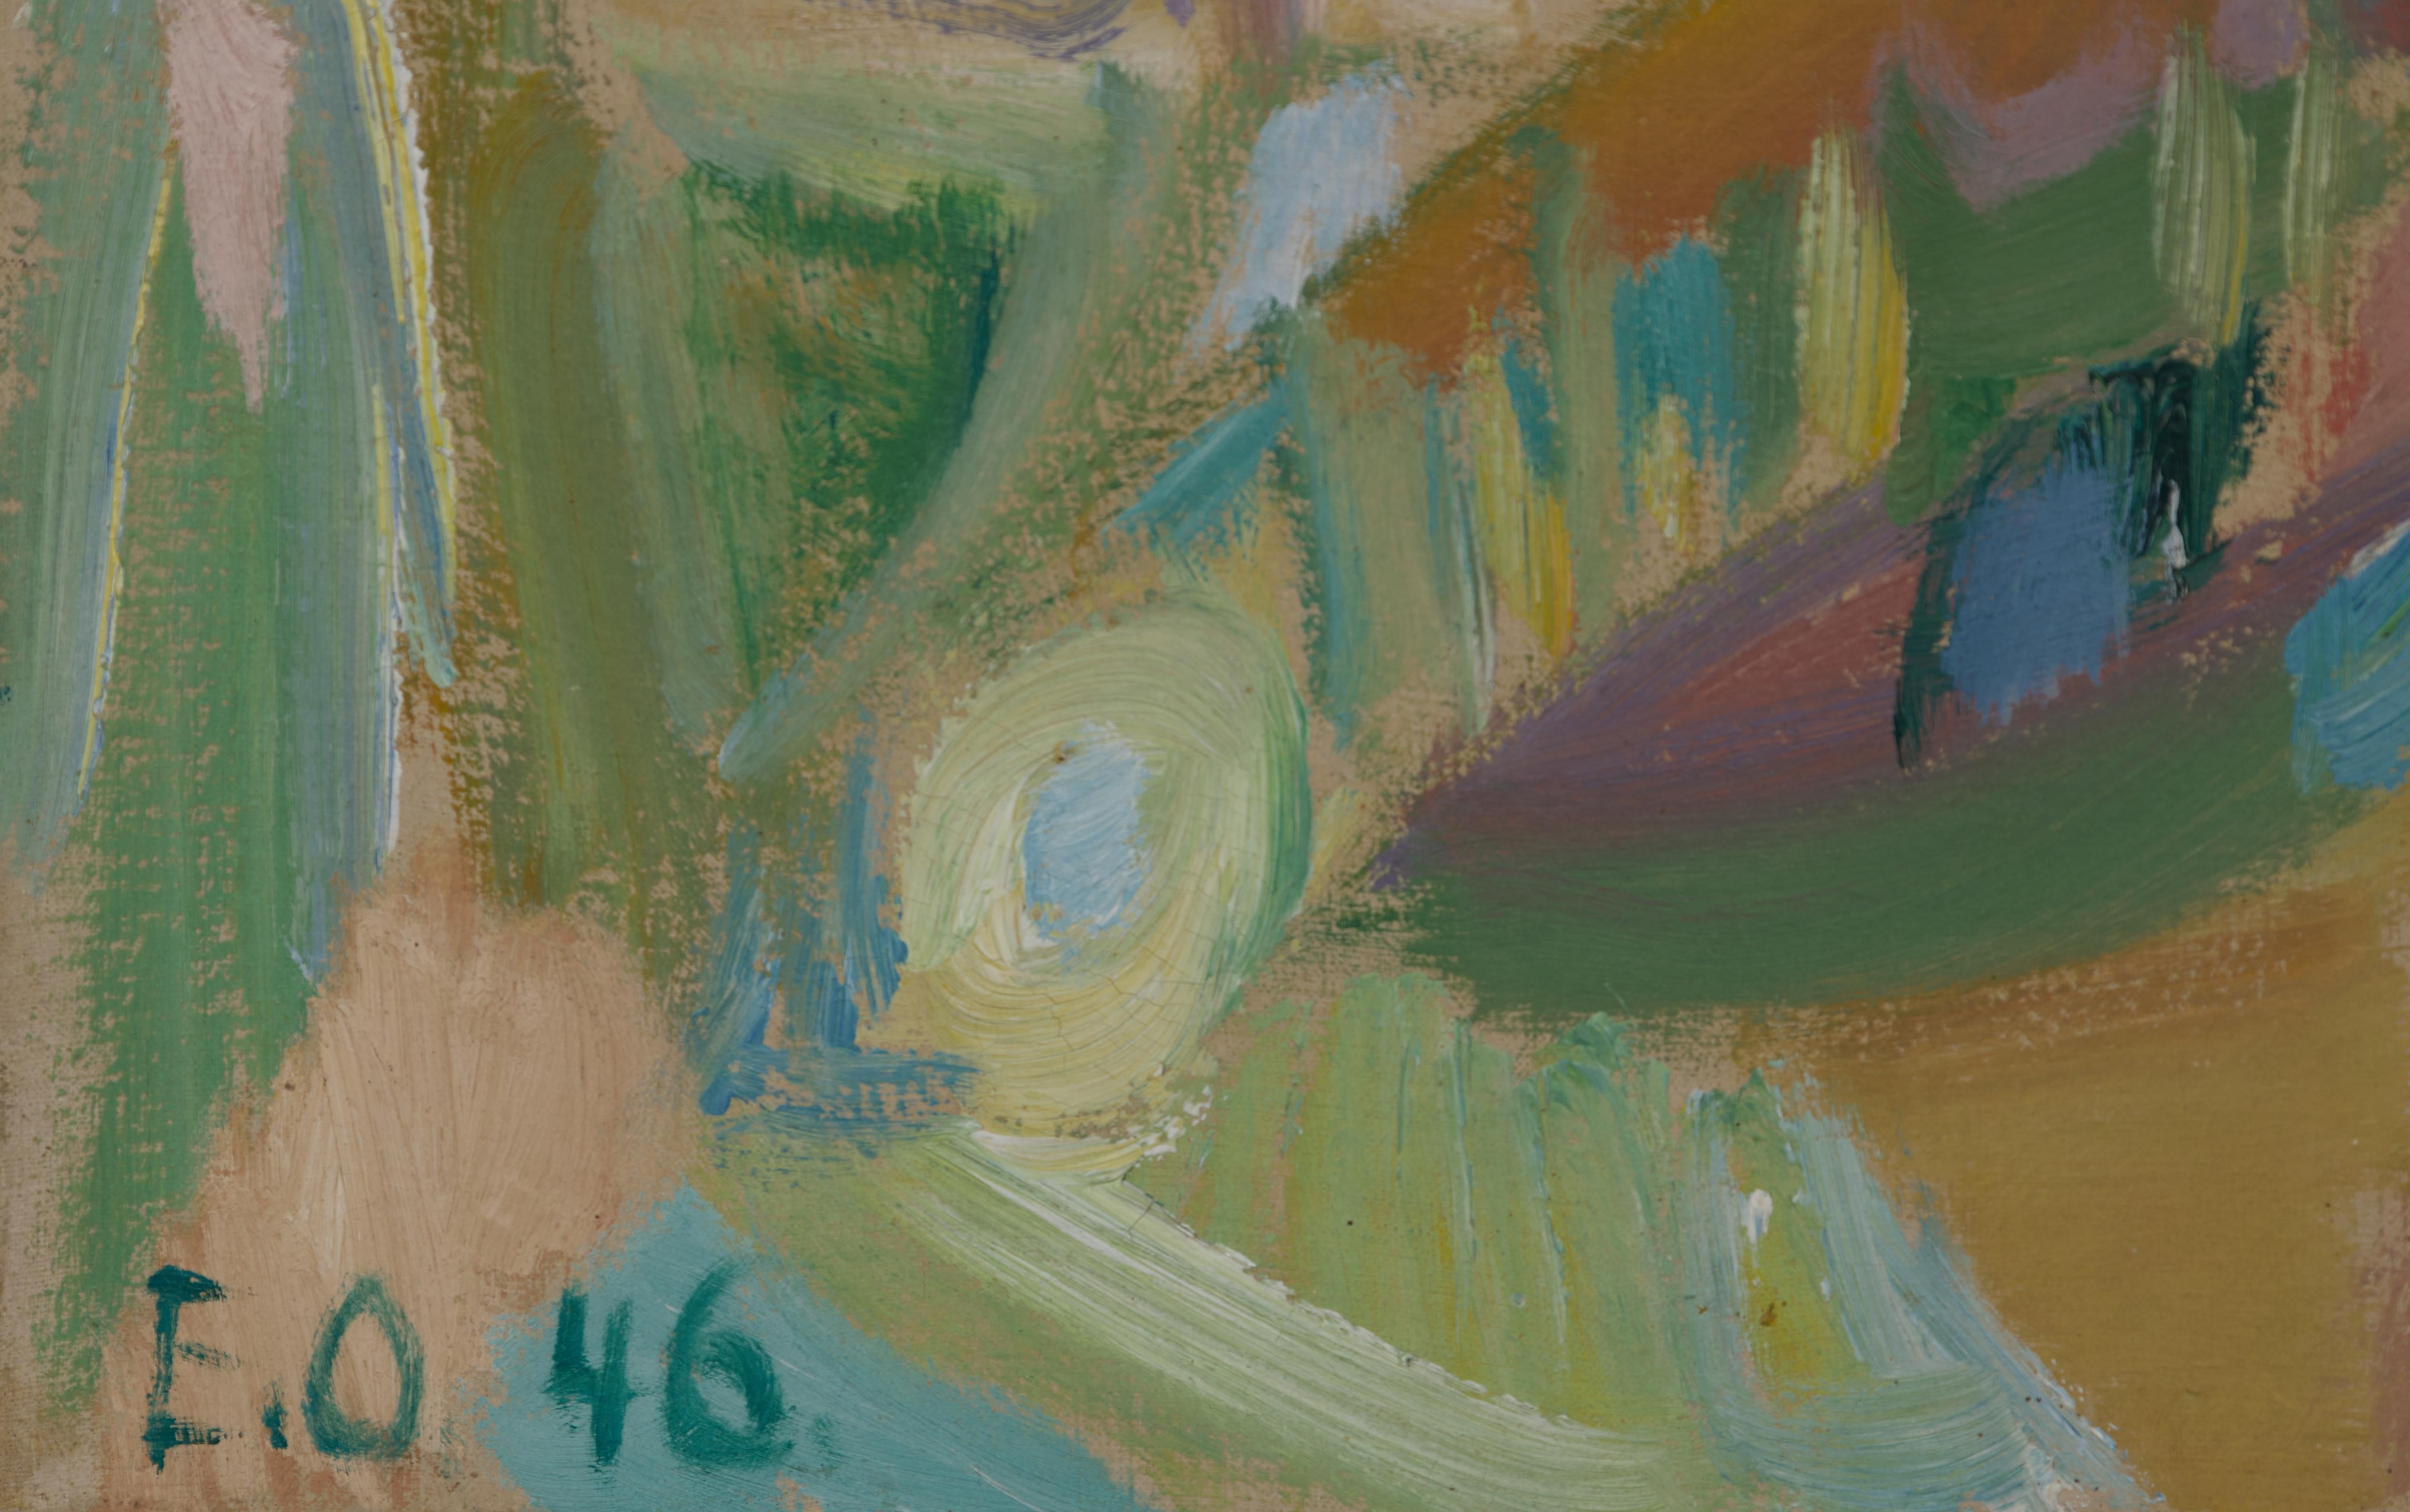 Erik Ortvad (Dänisch, 1917 - 2008) 
Abstrakte Landschaft, 1946
Öl auf Leinwand
Signiert und datiert unten rechts
32 X 37,5 Zoll
35 x 40,5 Zoll, gerahmt

Der 1917 in Kopenhagen geborene Erik Ortvad war ein surrealistischer Maler und Gründungsmitglied